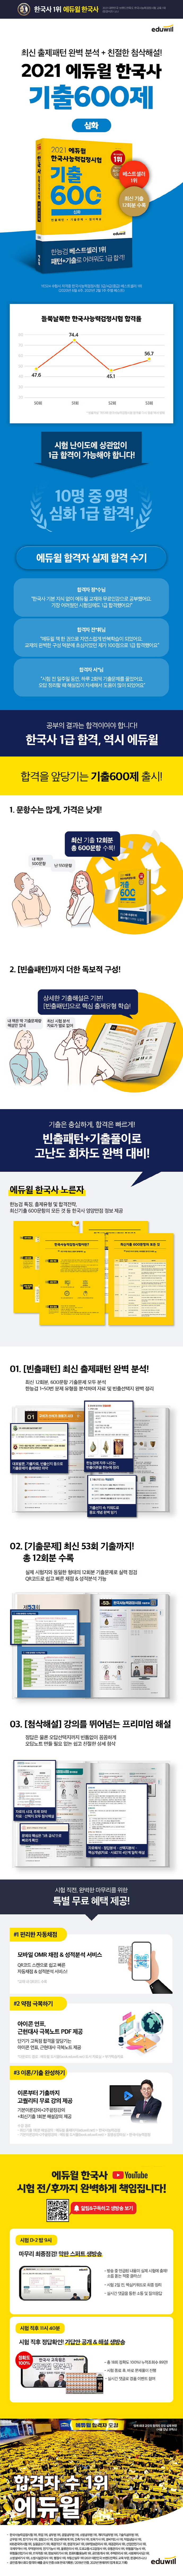 2021 에듀윌 한국사능력검정시험 기출 600제 심화 도서 상세이미지